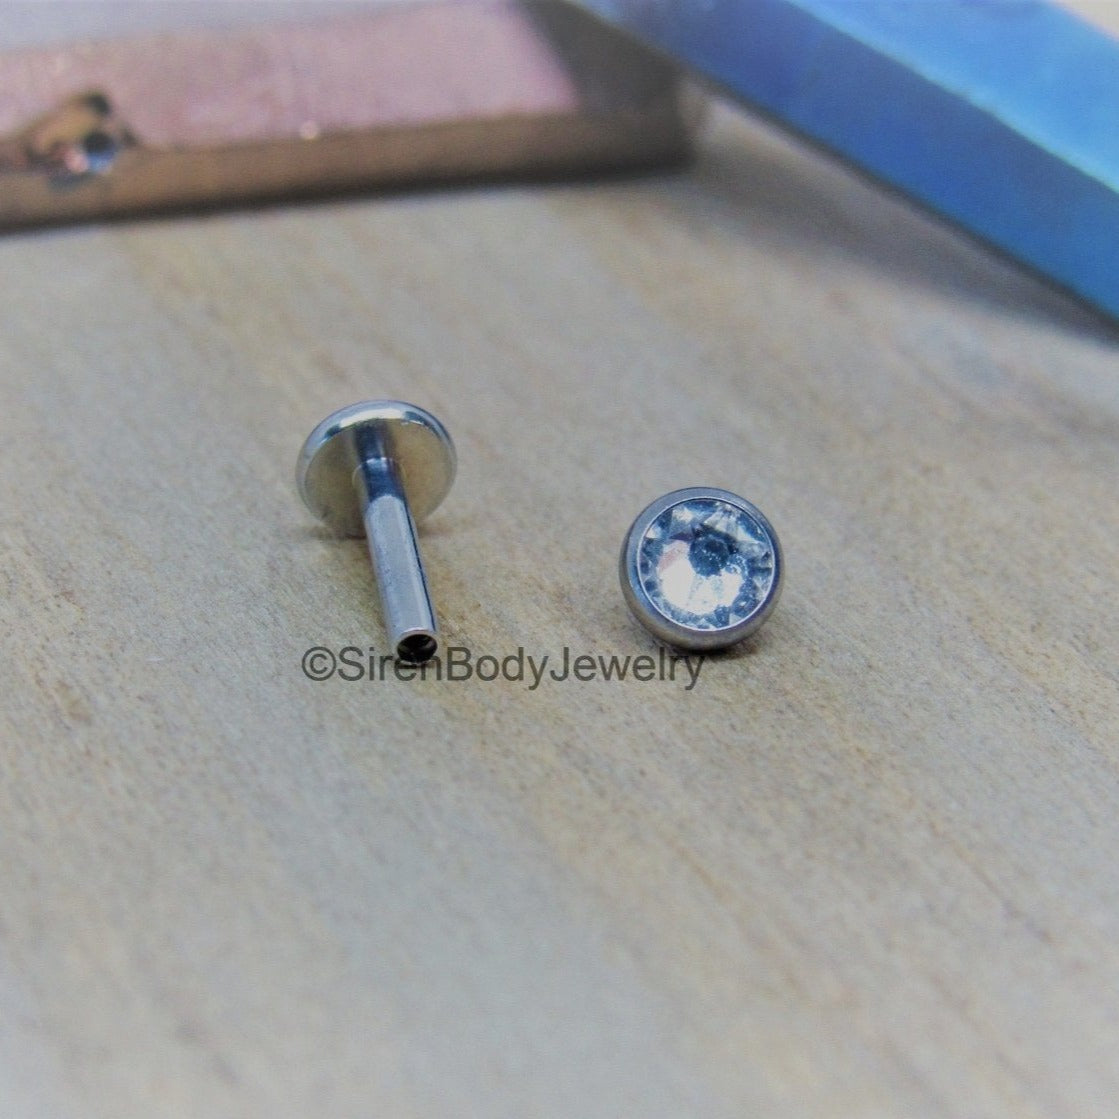 16g 4mm bezel set clear gemstone flat back labret stud earring